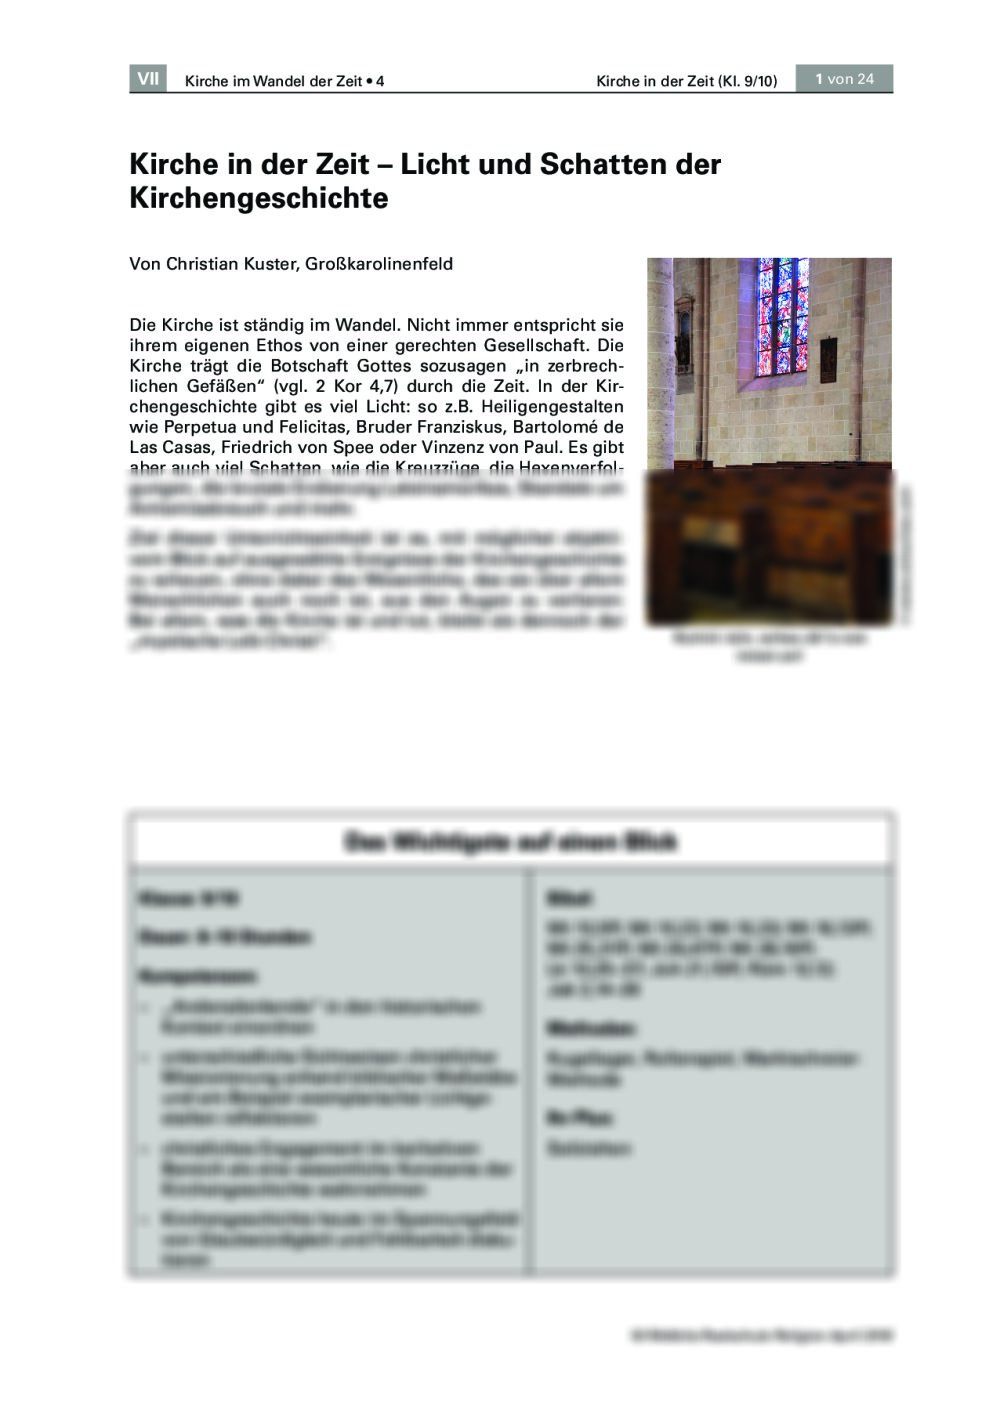 Licht und Schatten der Kirchengeschichte - Seite 1